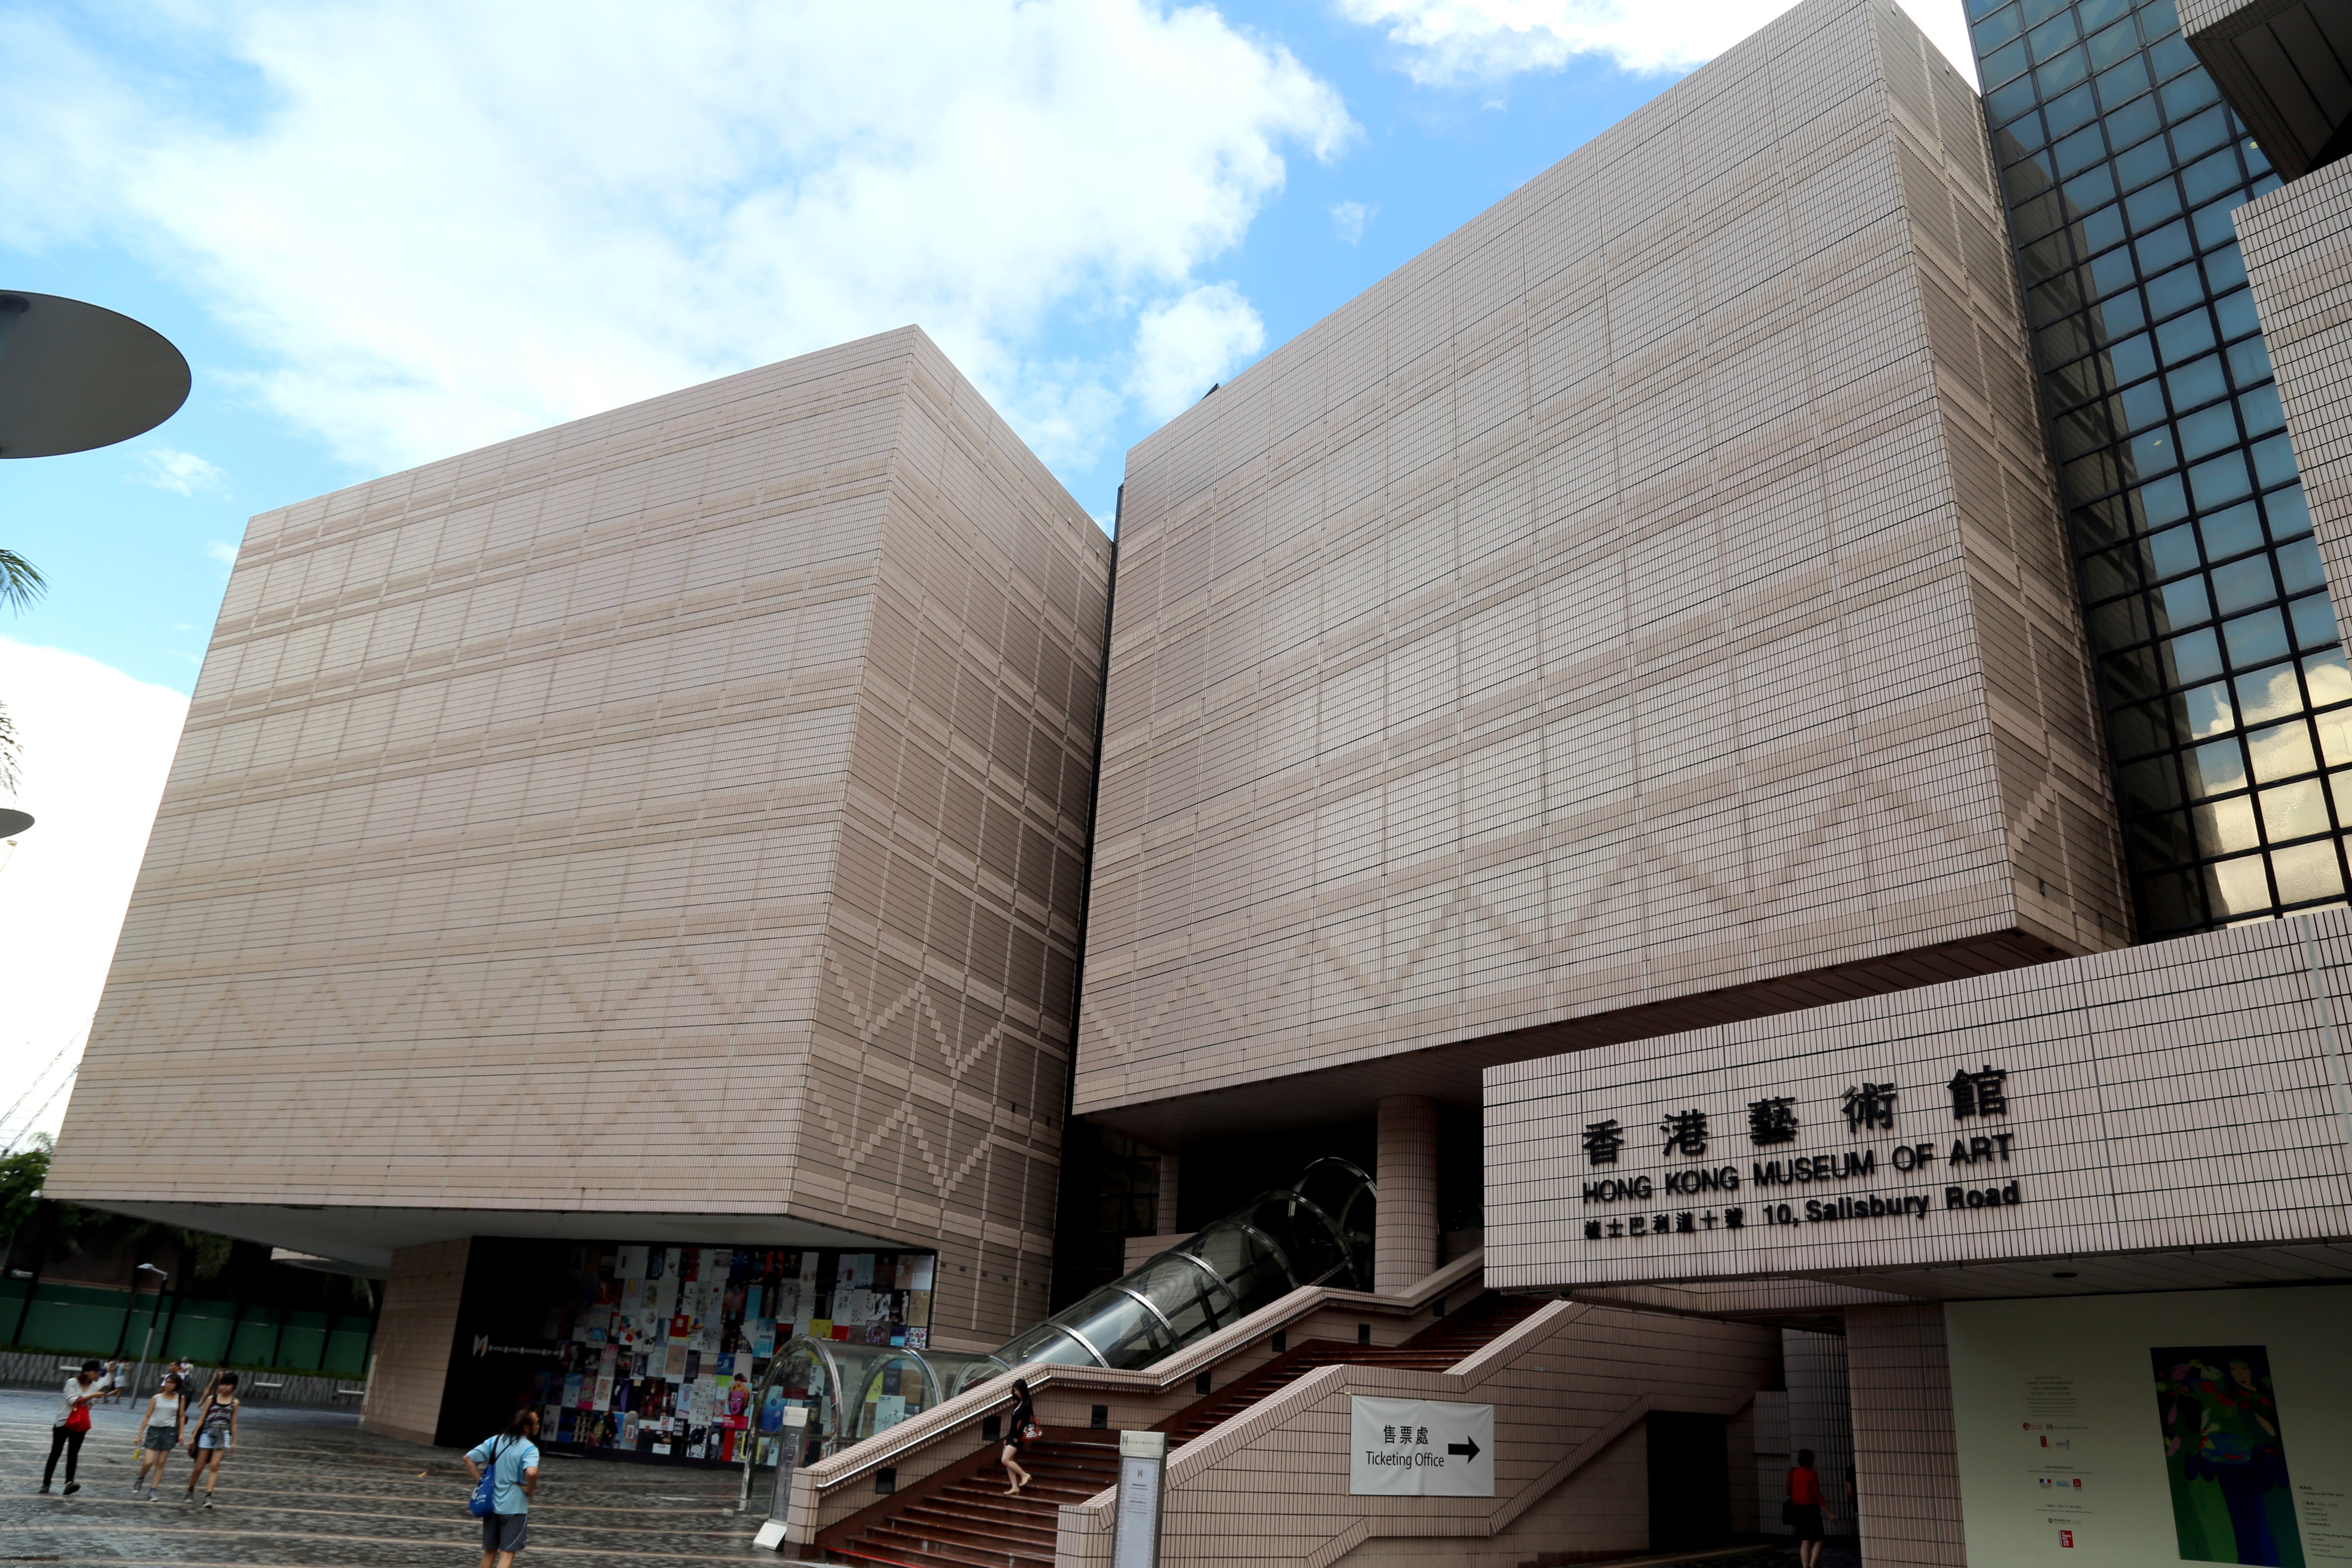 Tsim Sha Tsui Promenade - Art, Science and Cultural center of Hong Kong